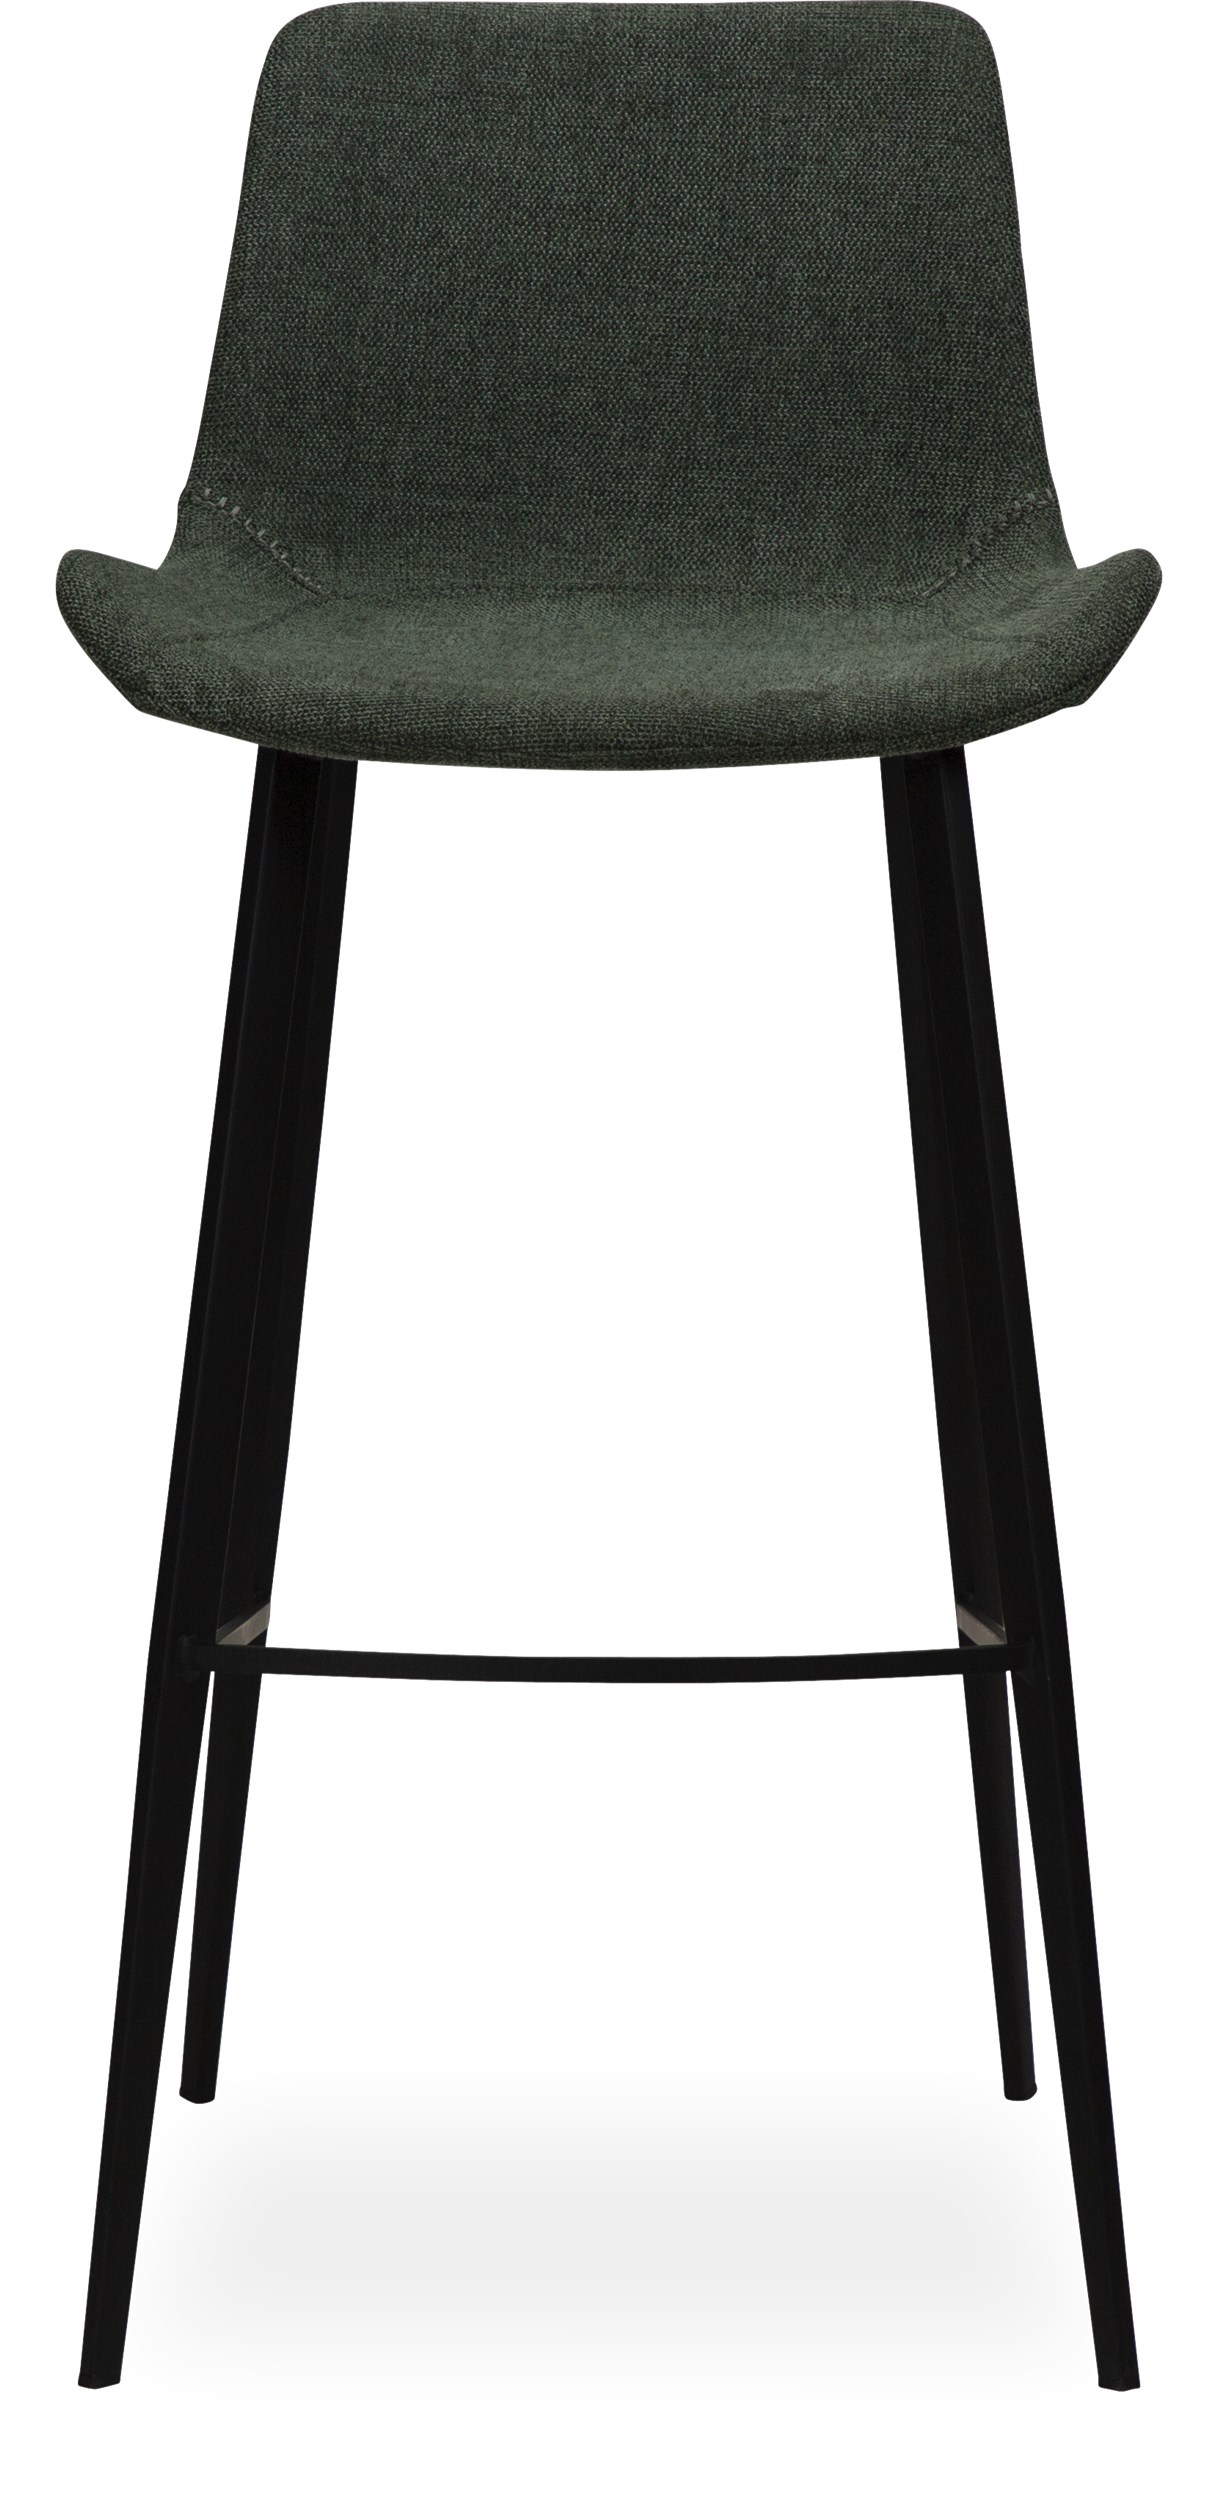 Hype Barstol - Sits i sage green textil och ben i svartlackerad metall